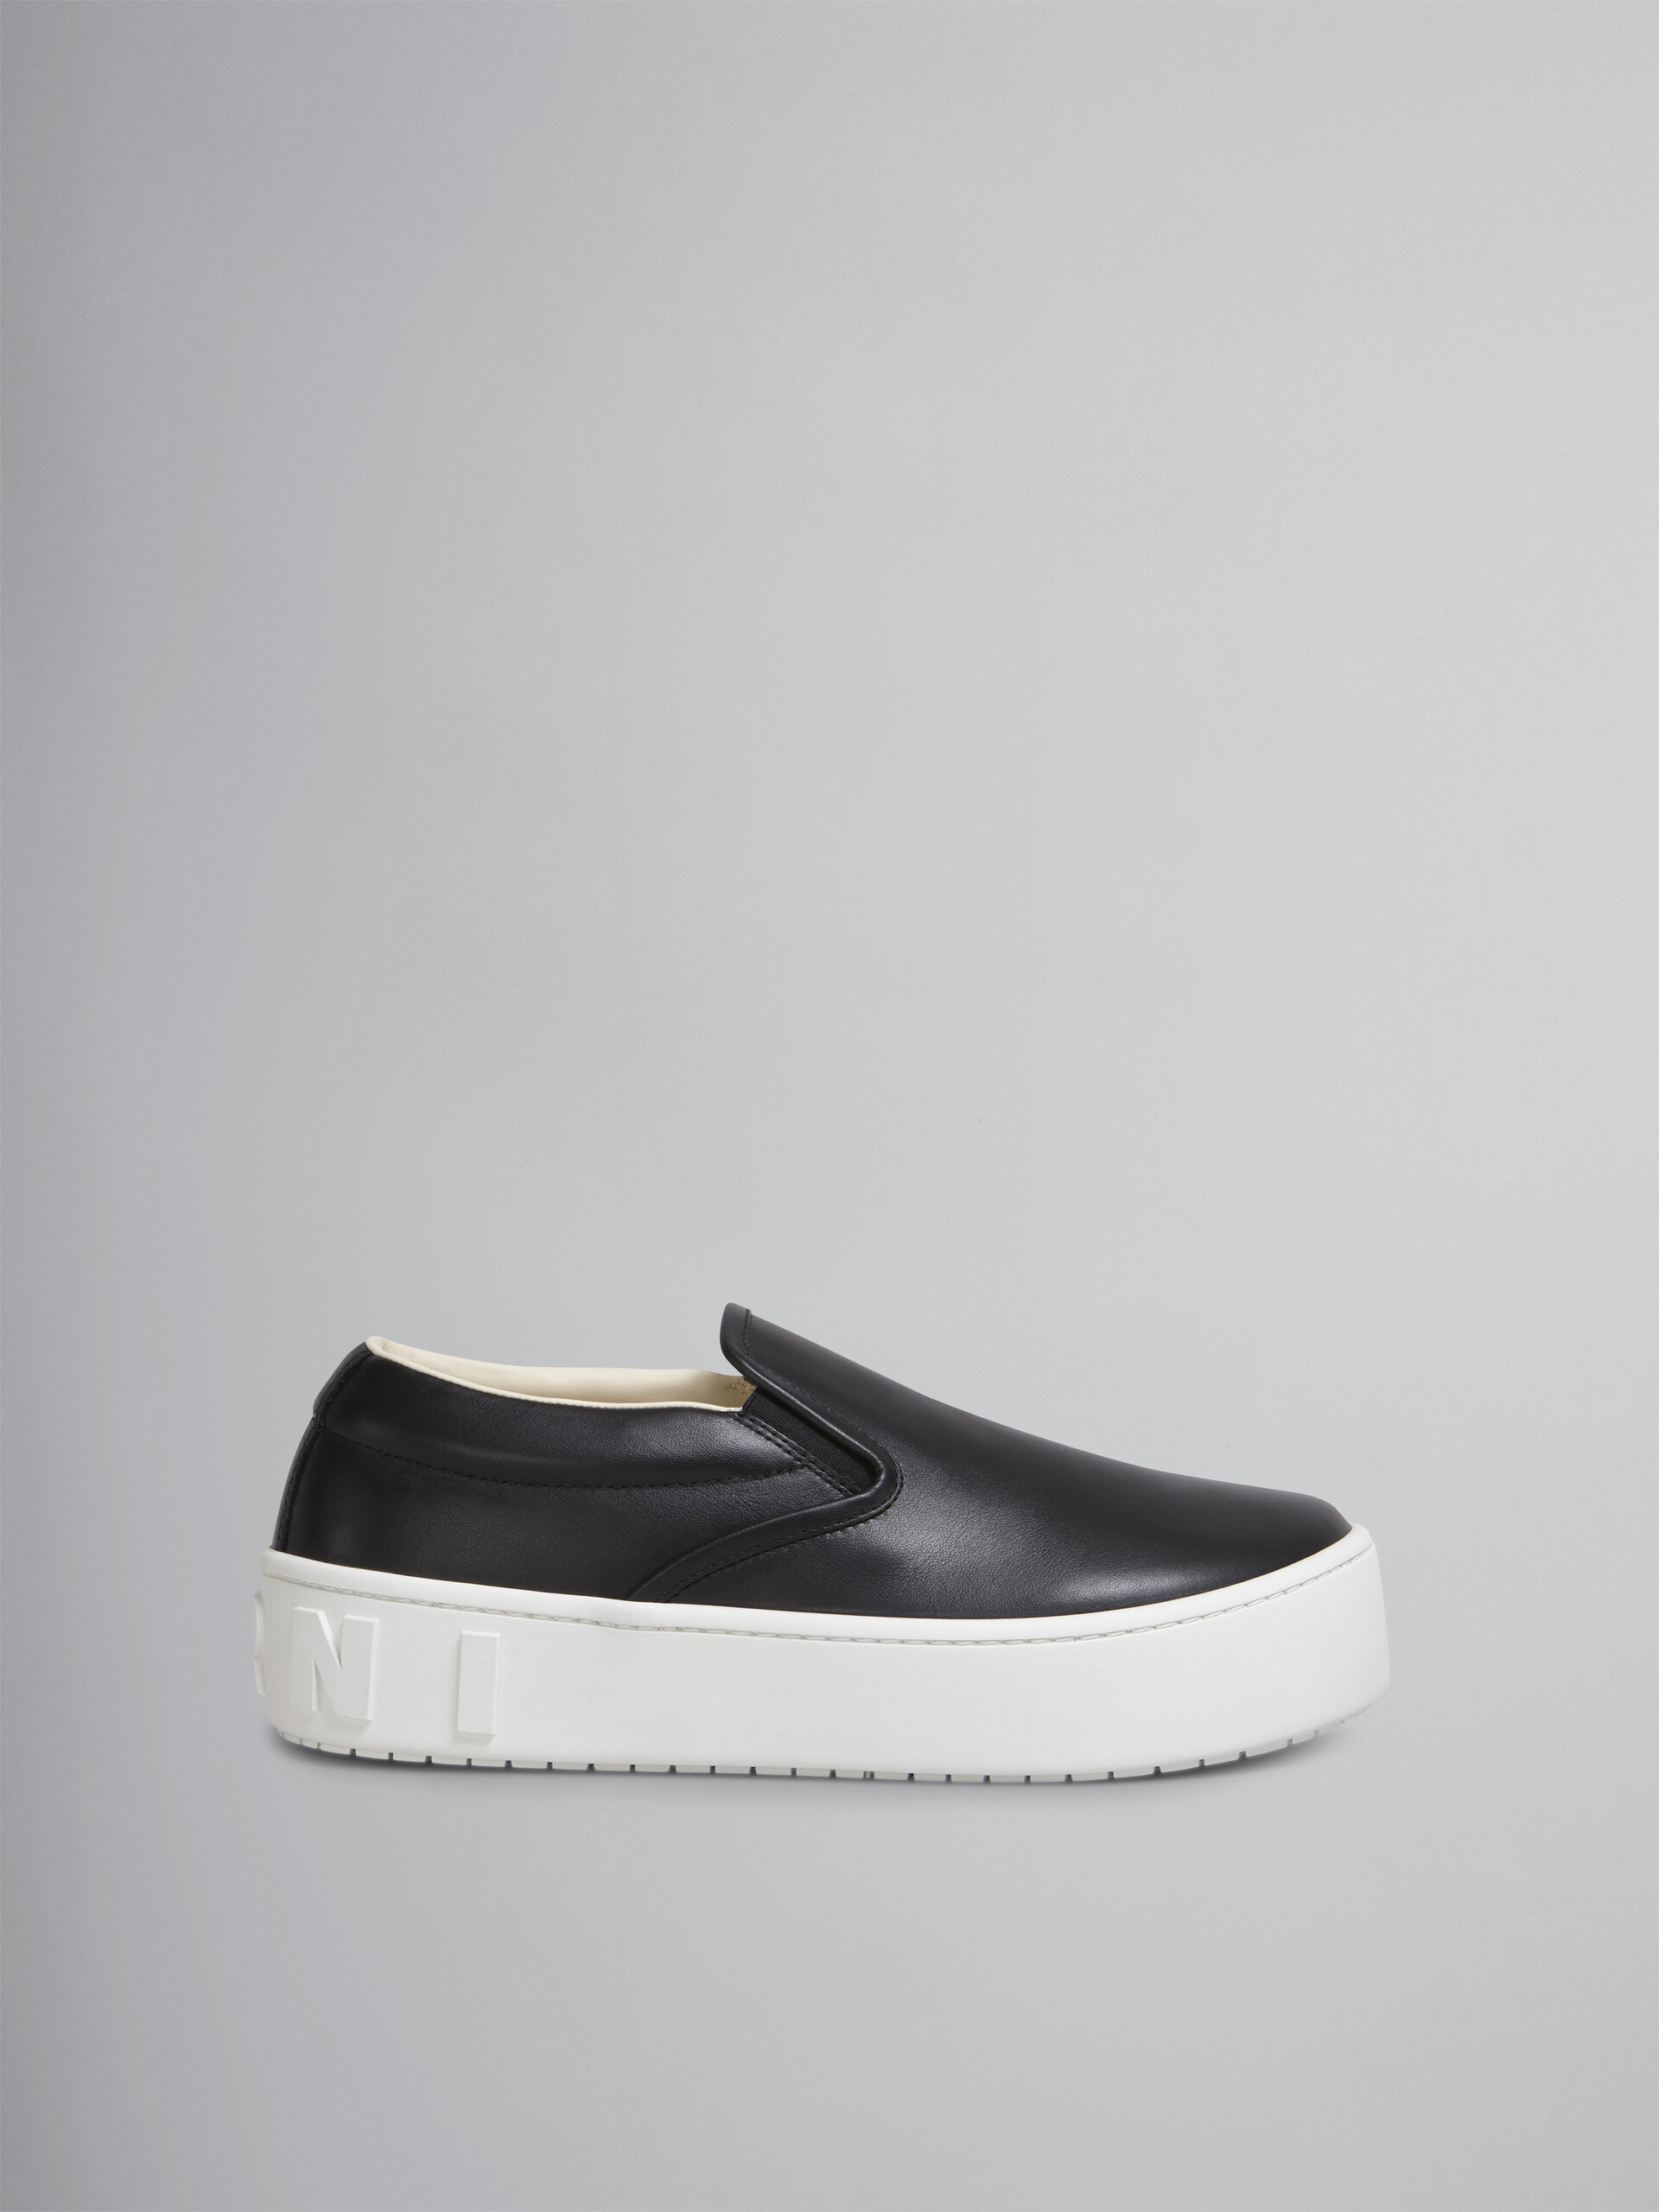 Sneaker slip-on in vitello nero con maxi logo Marni in rilievo - Sneakers - Image 1